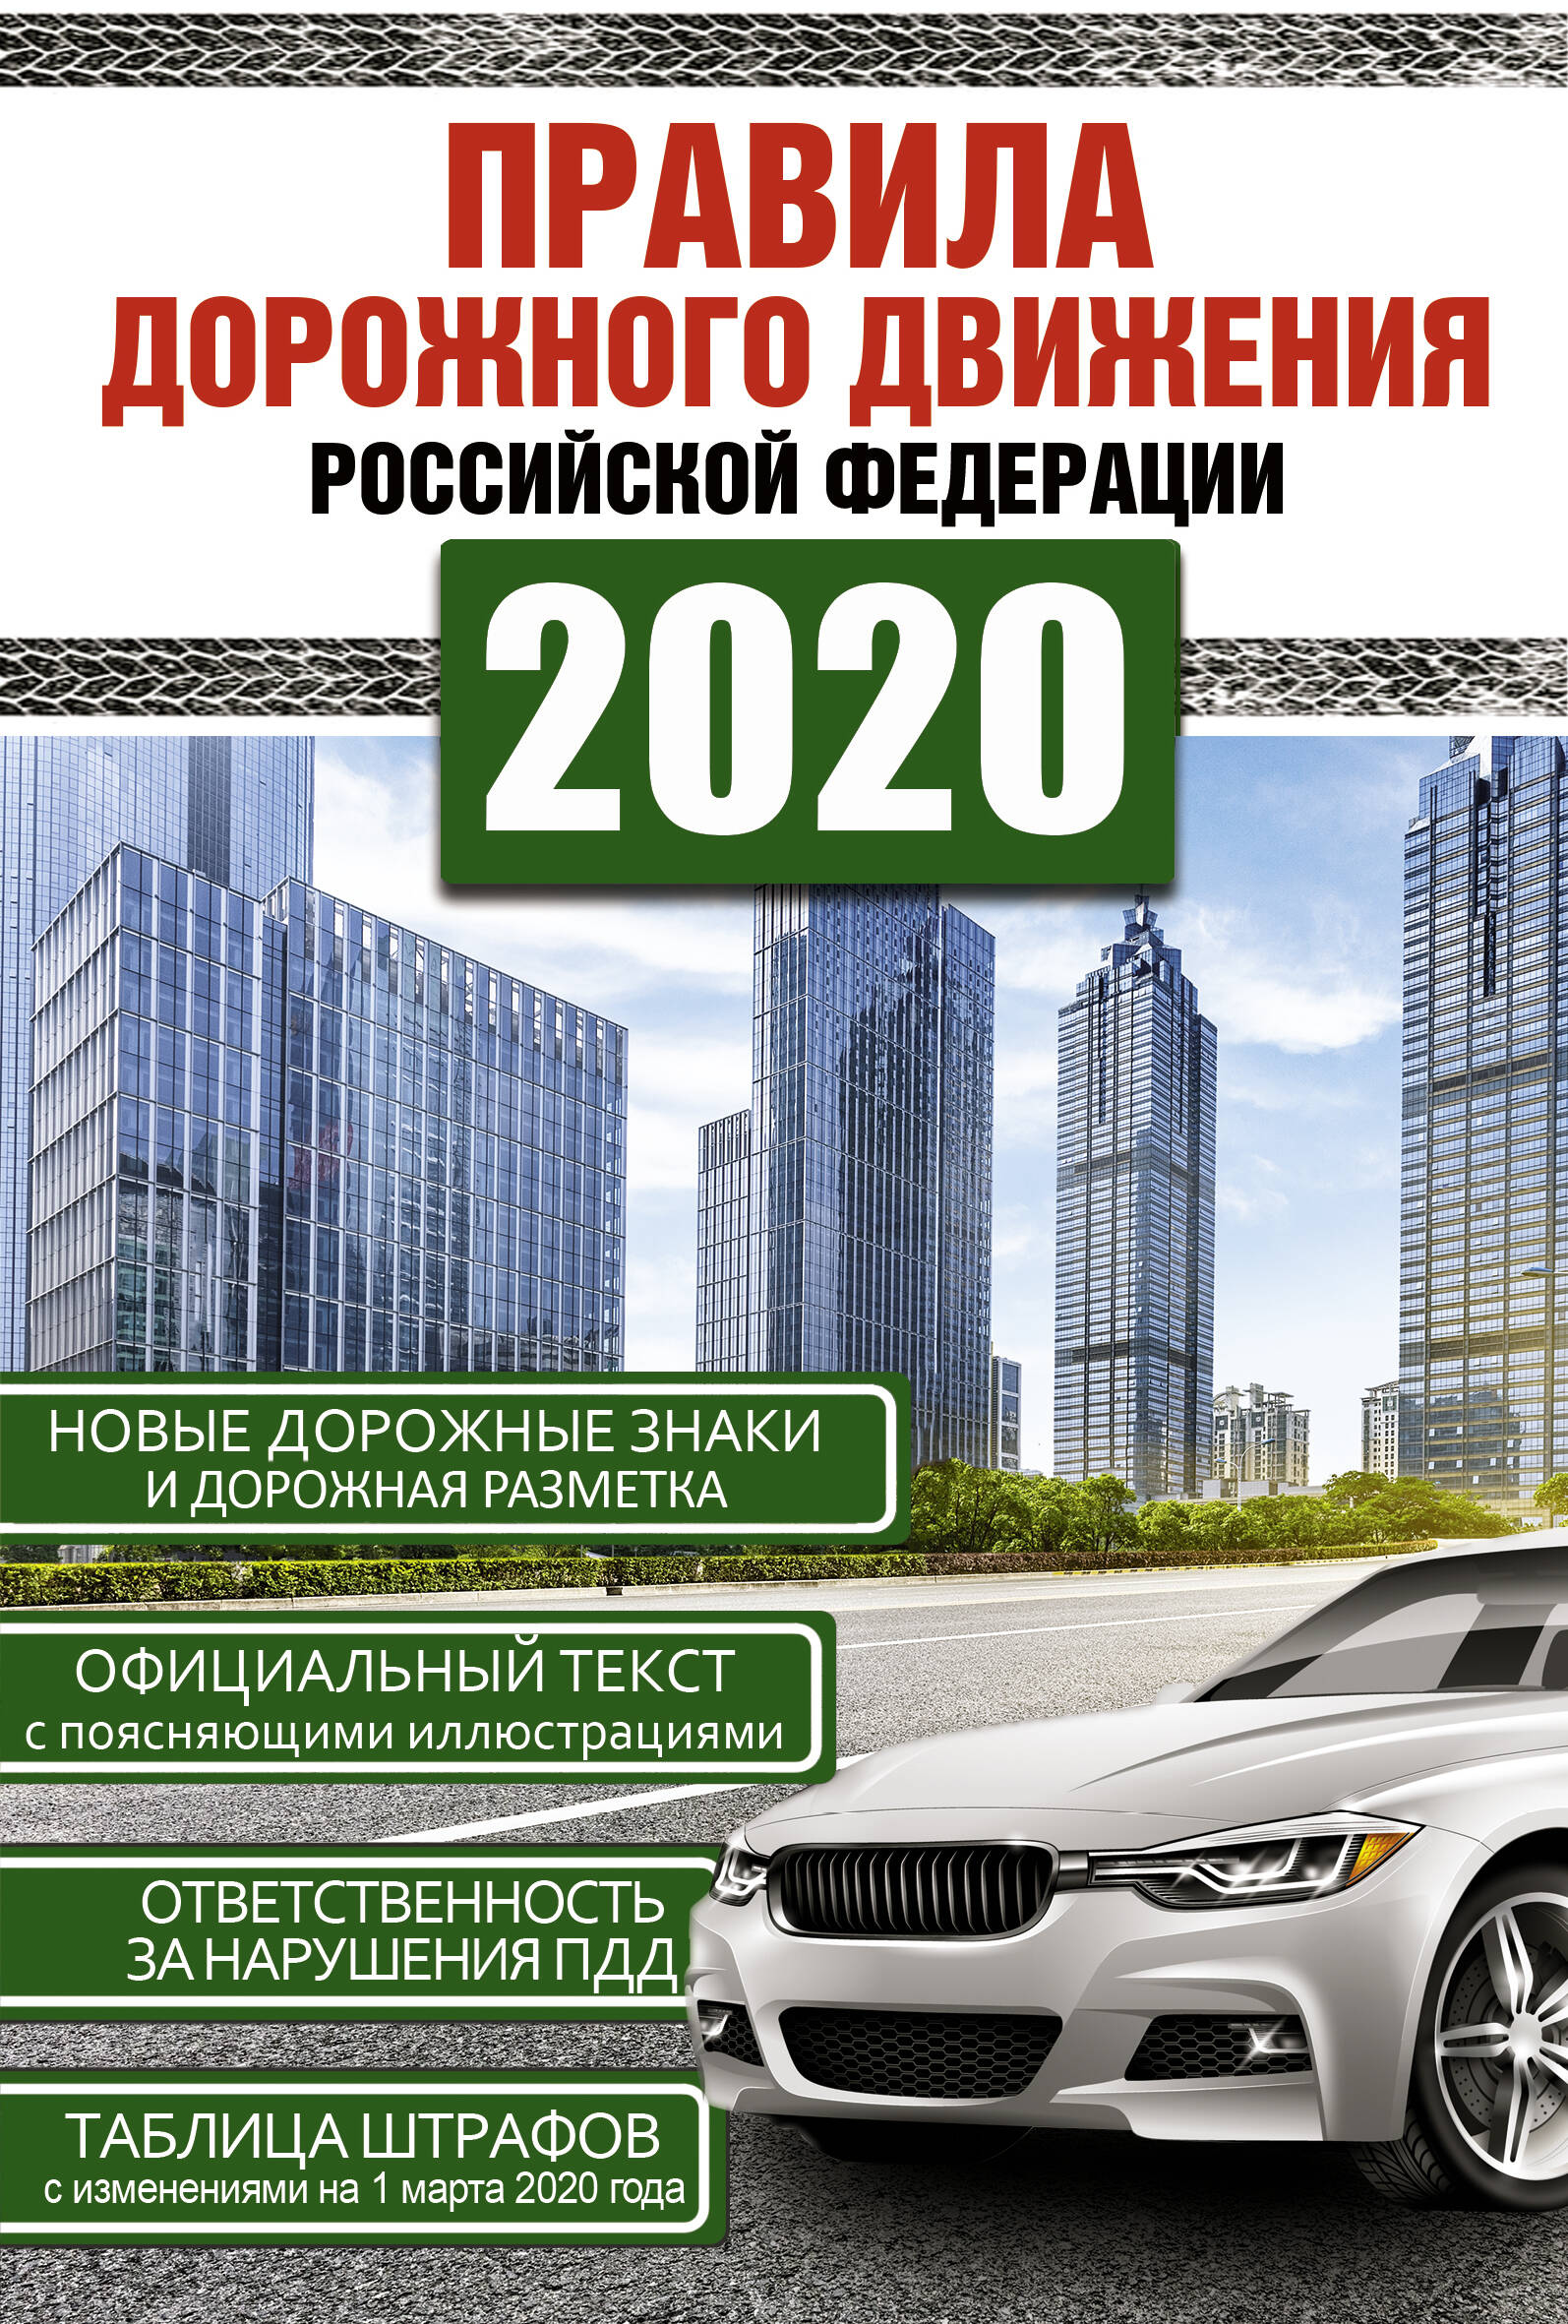  Правила дорожного движения Российской Федерации на 1 марта 2020 года - страница 0